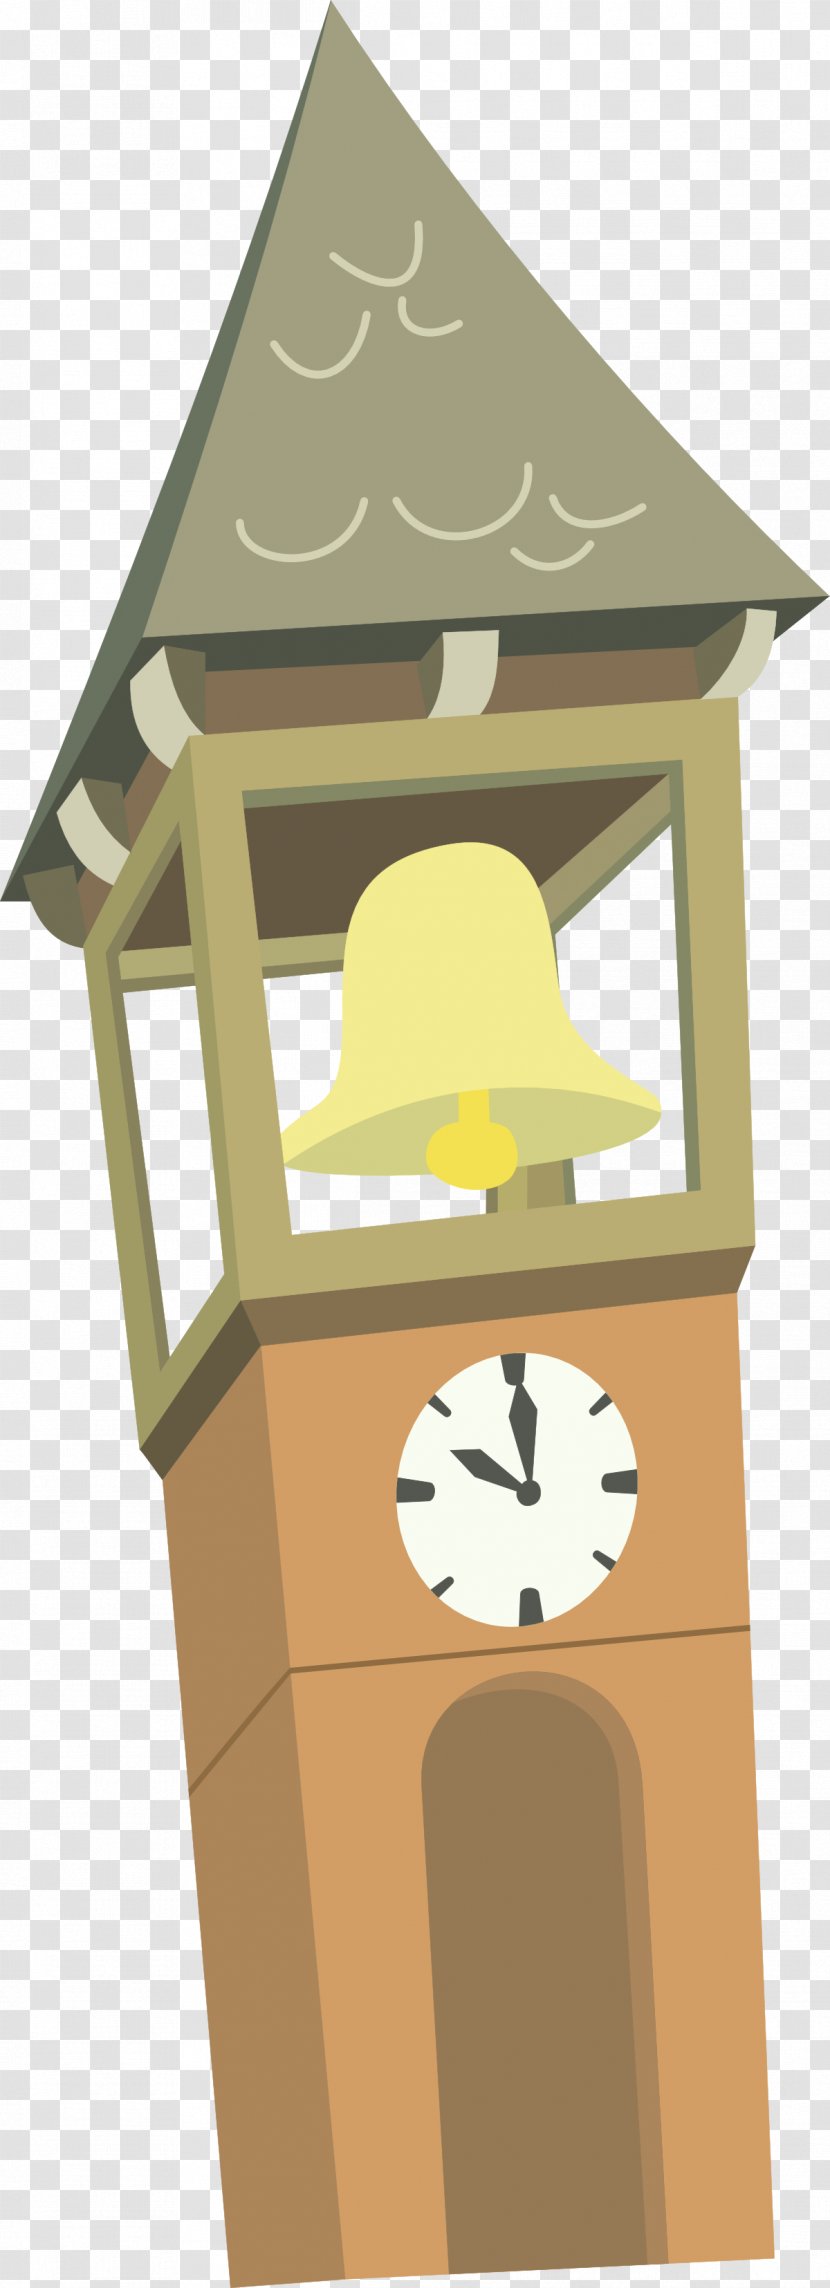 Big Ben Cartoon Clock Tower Transparent PNG